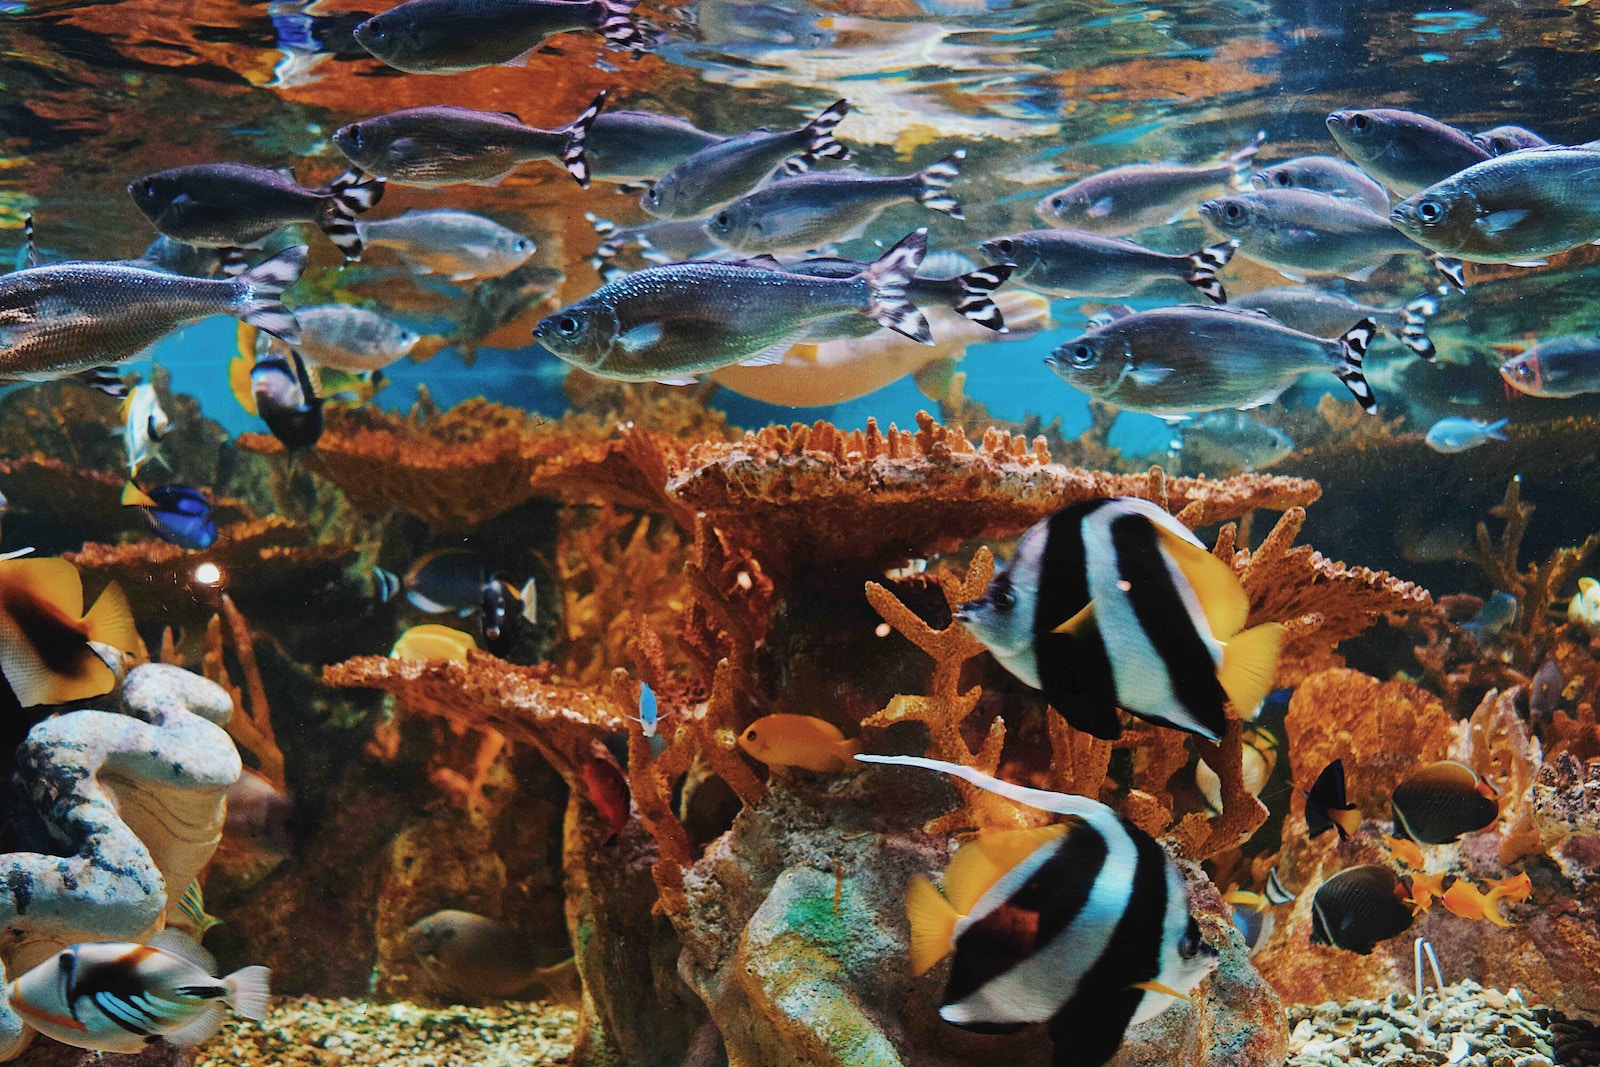 Tipps zur Vermeidung von Überpopulation im Aquarium: So halten Sie Ihre Unterwasserwelt im Gleichgewicht